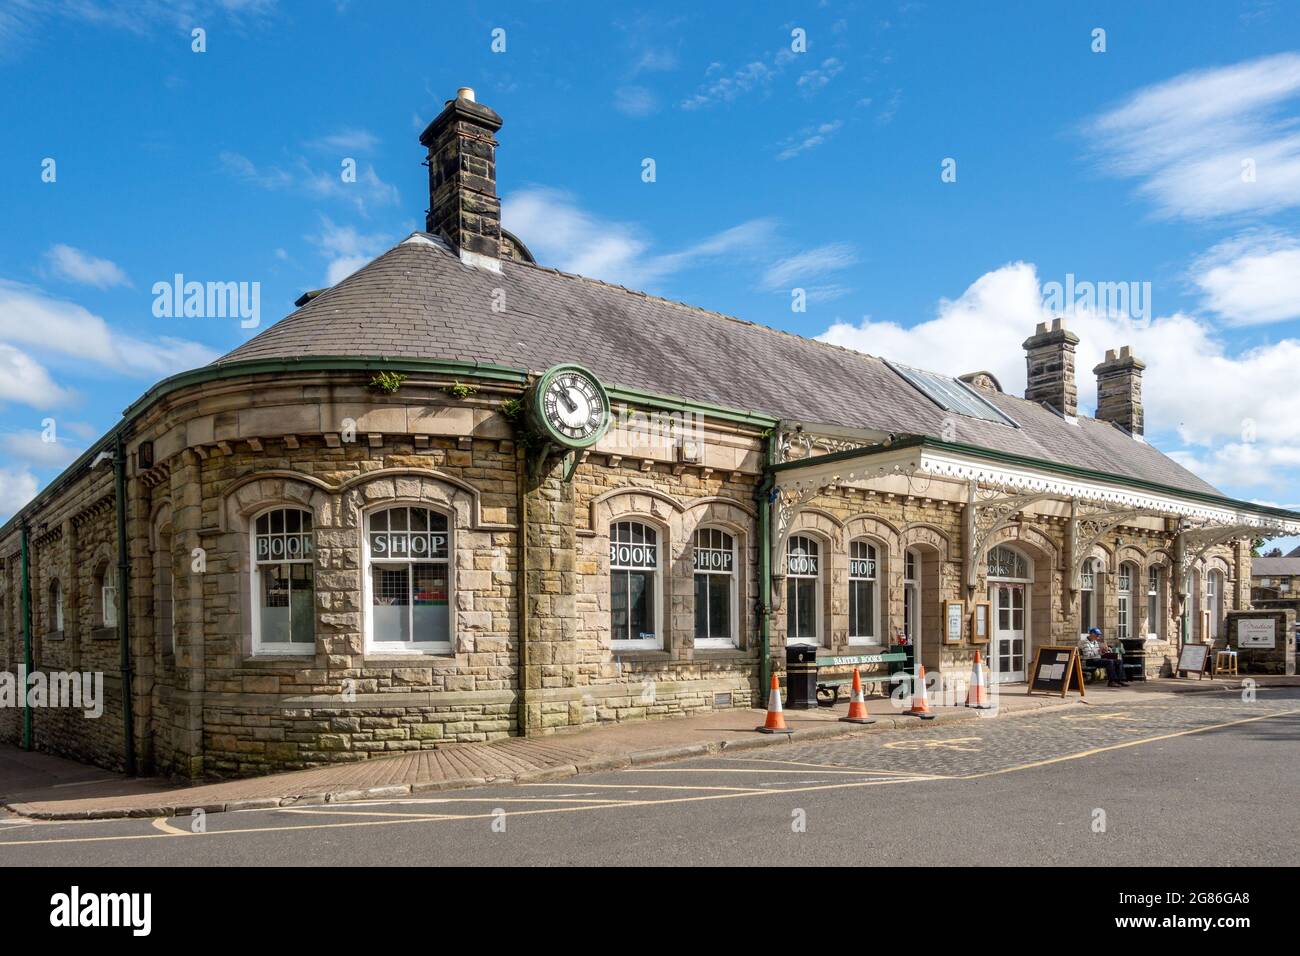 Barter Books, ein ehemaliger Bahnhof und einer der größten Antiquariate in Großbritannien, in Alnwick, Northumberland, England, Großbritannien Stockfoto